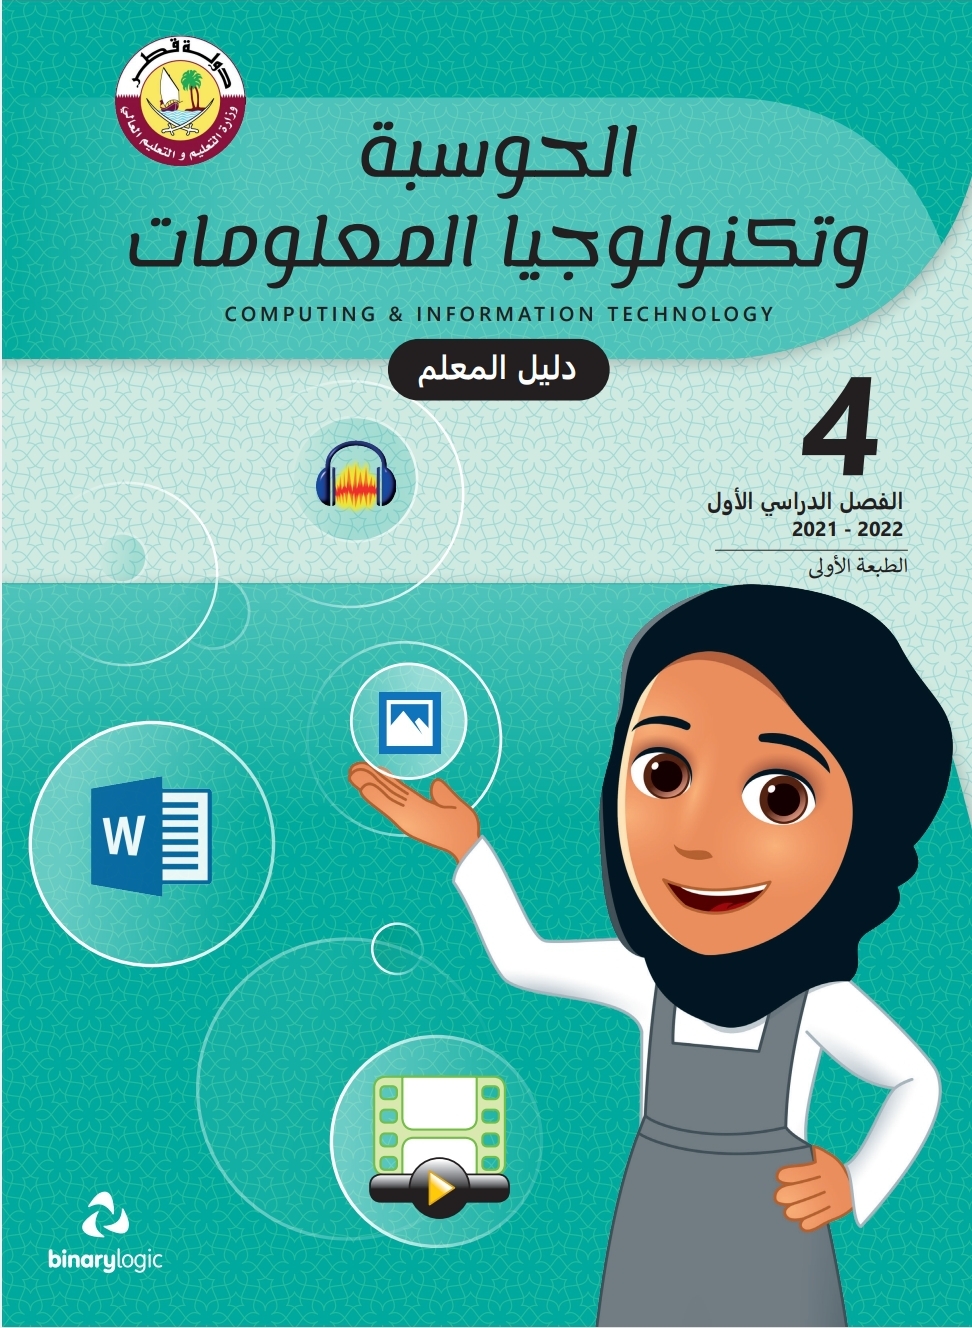 دليل معلم الحوسبة وتكنولوجيا المعلومات الرابع فصل اول قطر